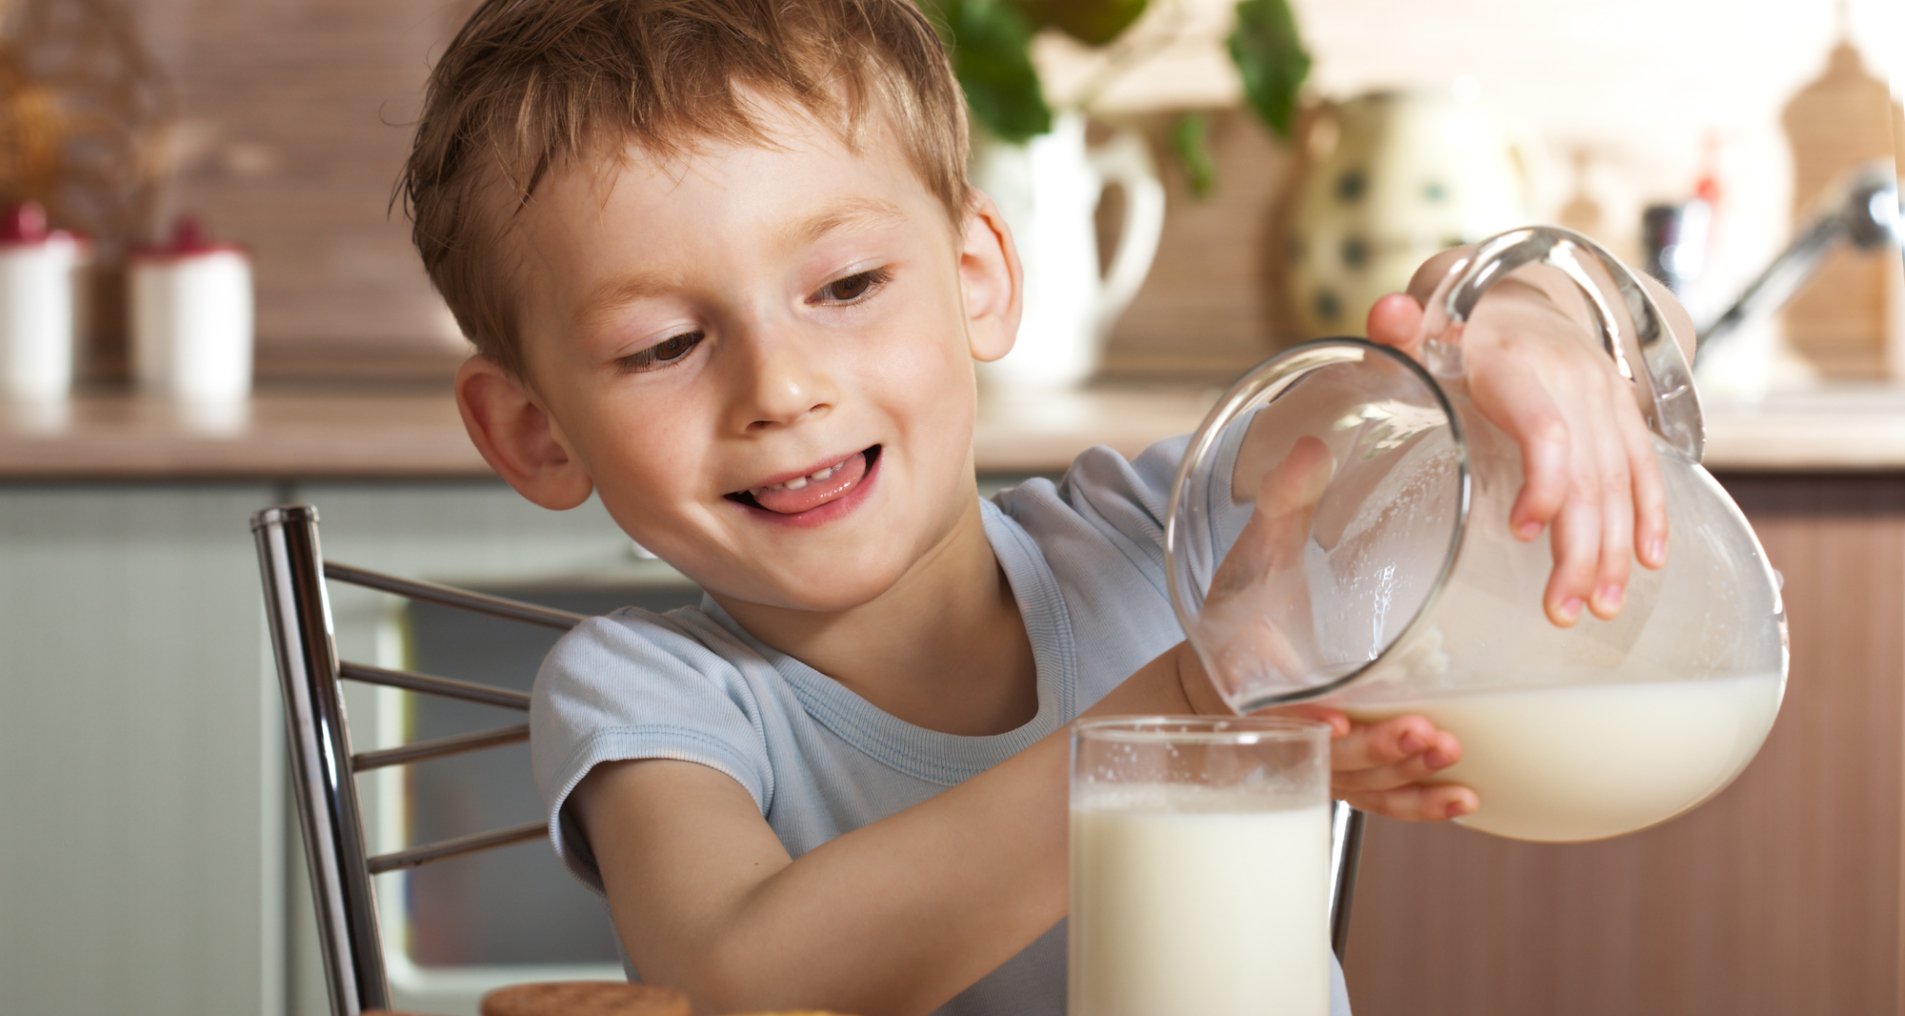 Ребенок наливает молоко в стакан.